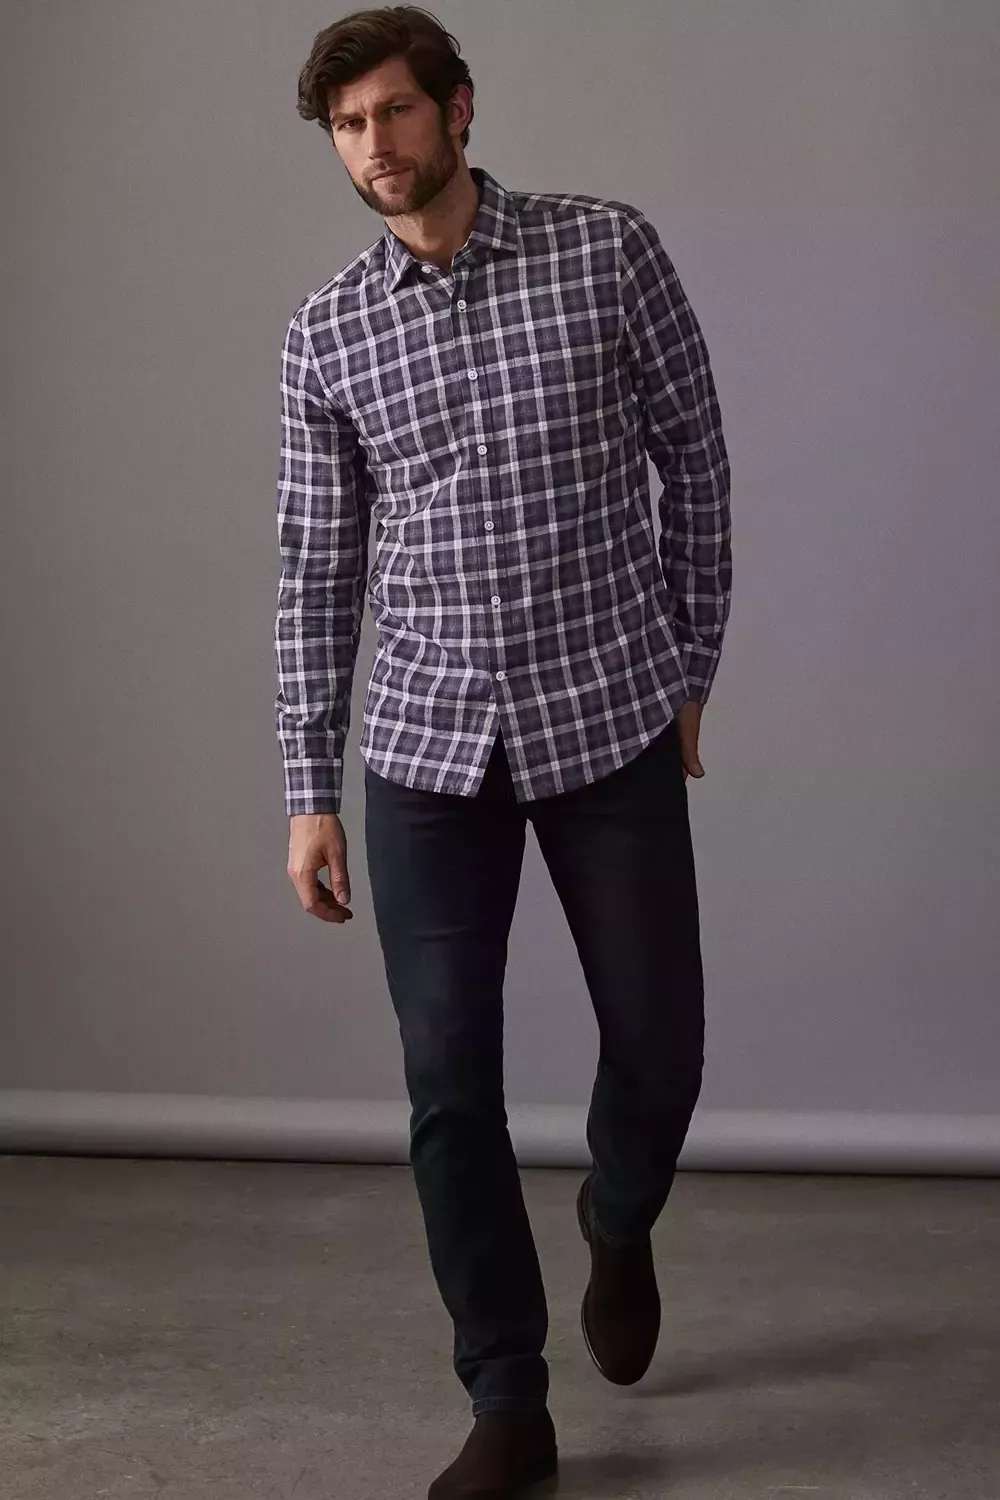 Cómo llevar una camisa de franela: Trajes modernos y con estilo para hombres